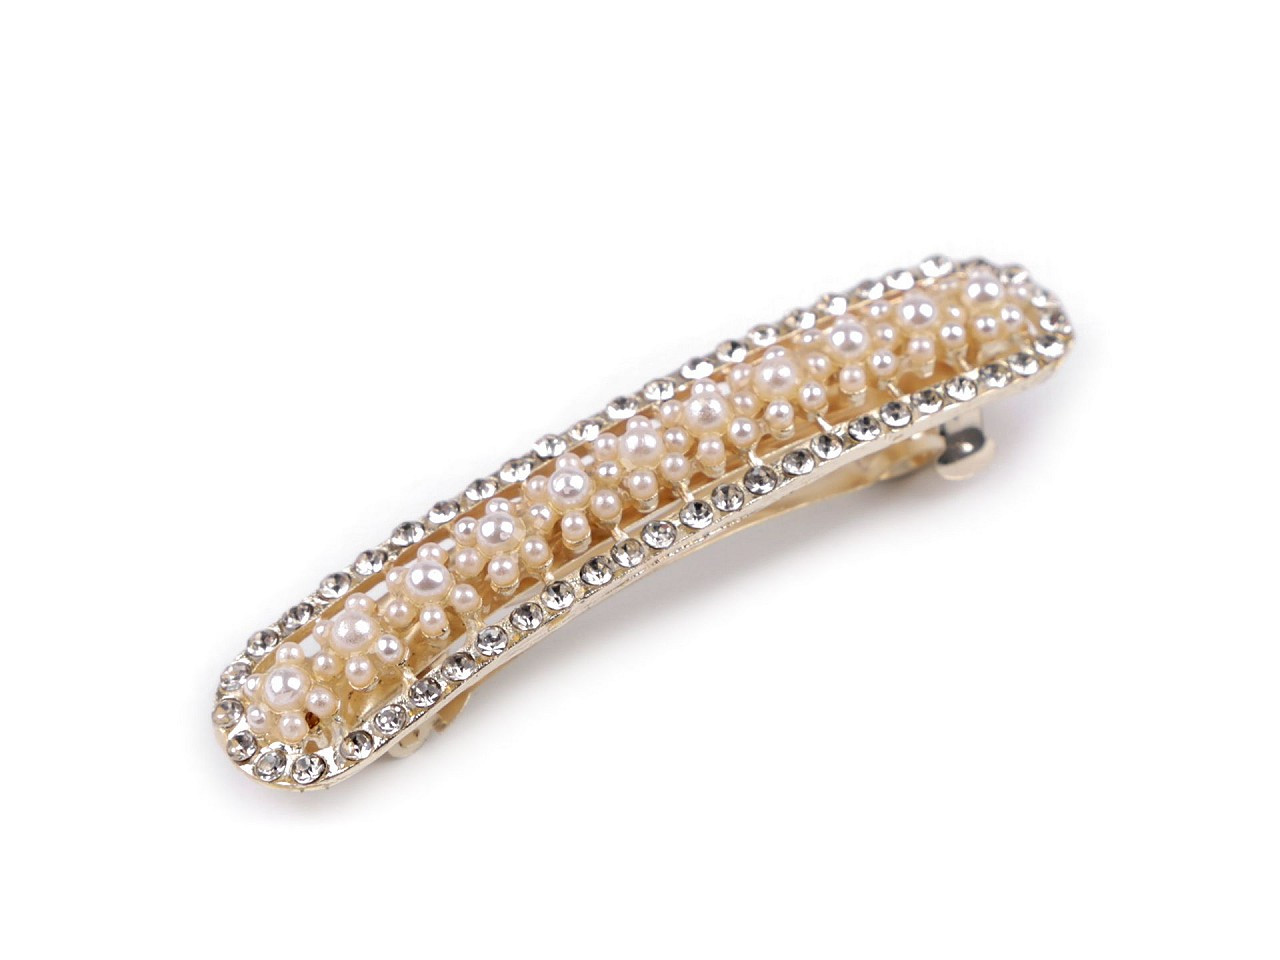 Francouzská spona do vlasů s perlami a broušenými kamínky, barva 2 perlová crystal